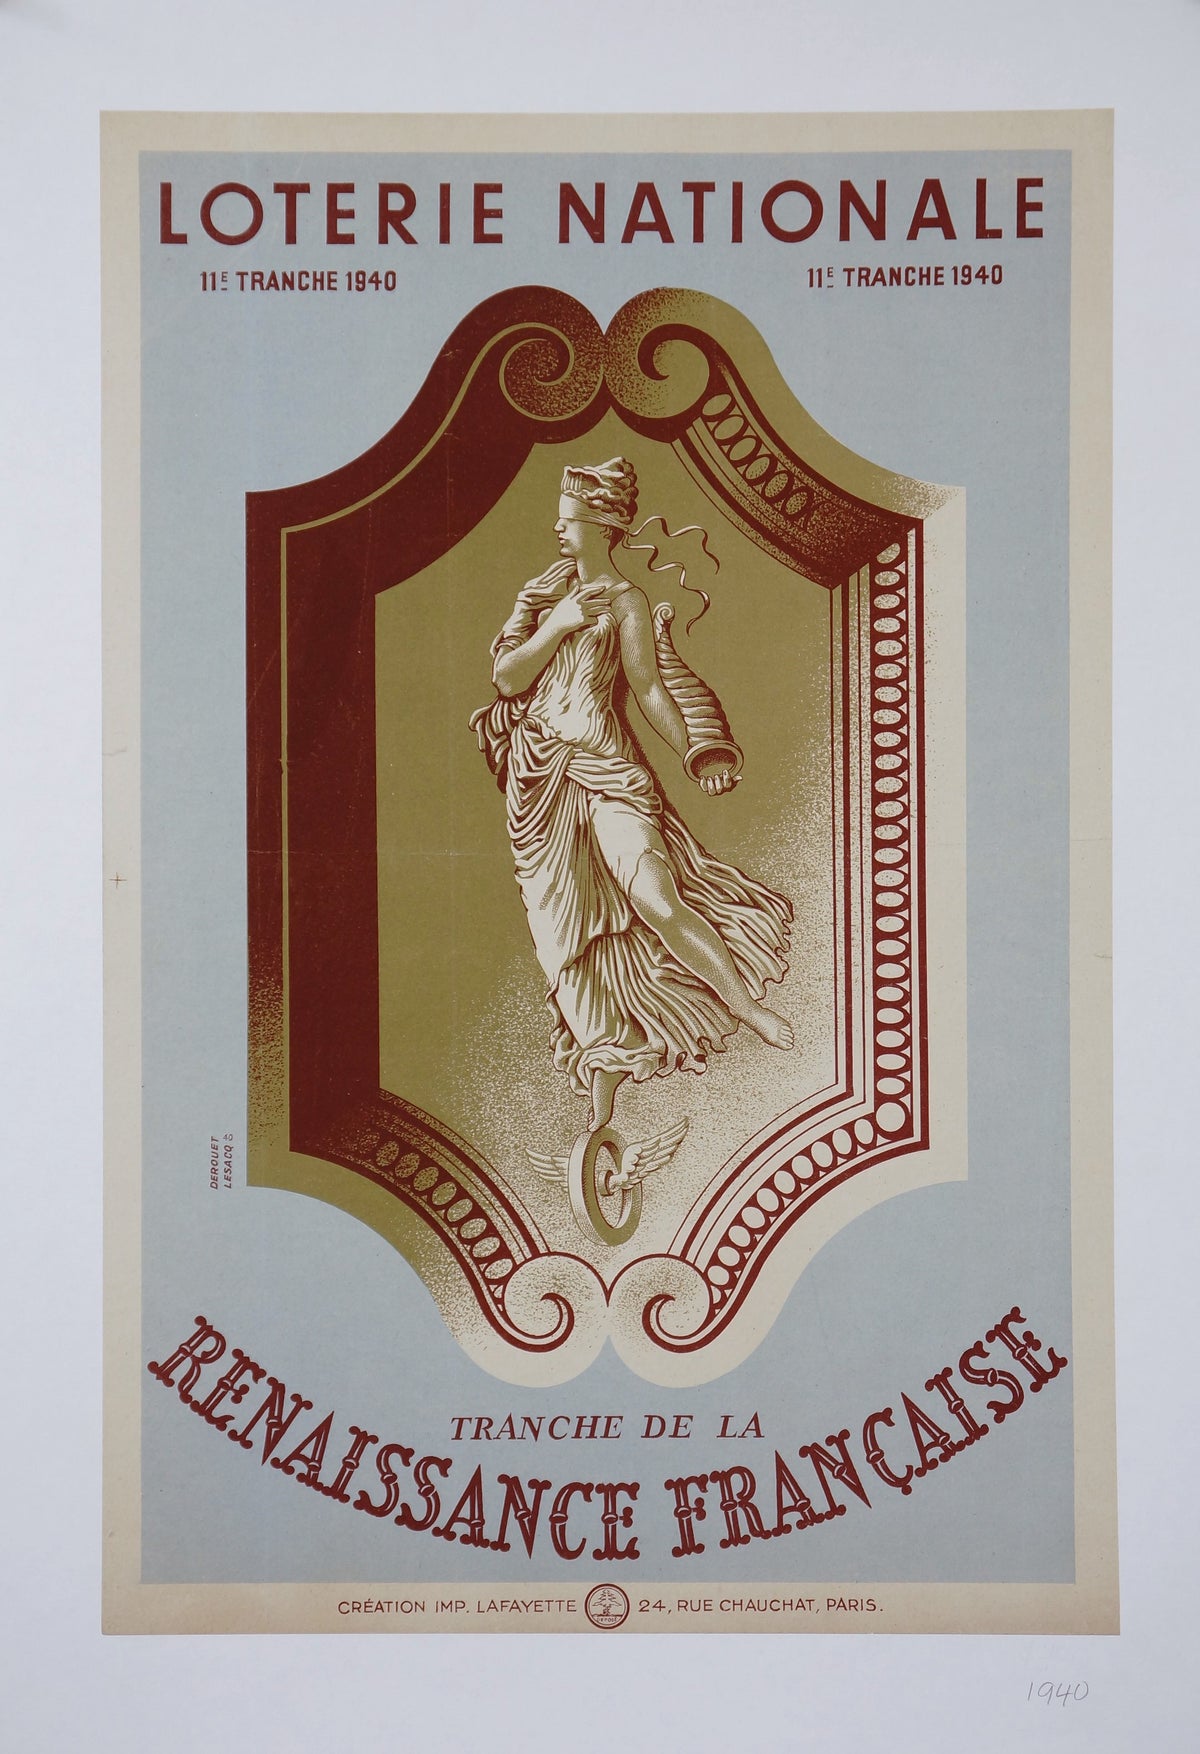 Loterie Nationale- Renaissance Francaise - Authentic Vintage Poster